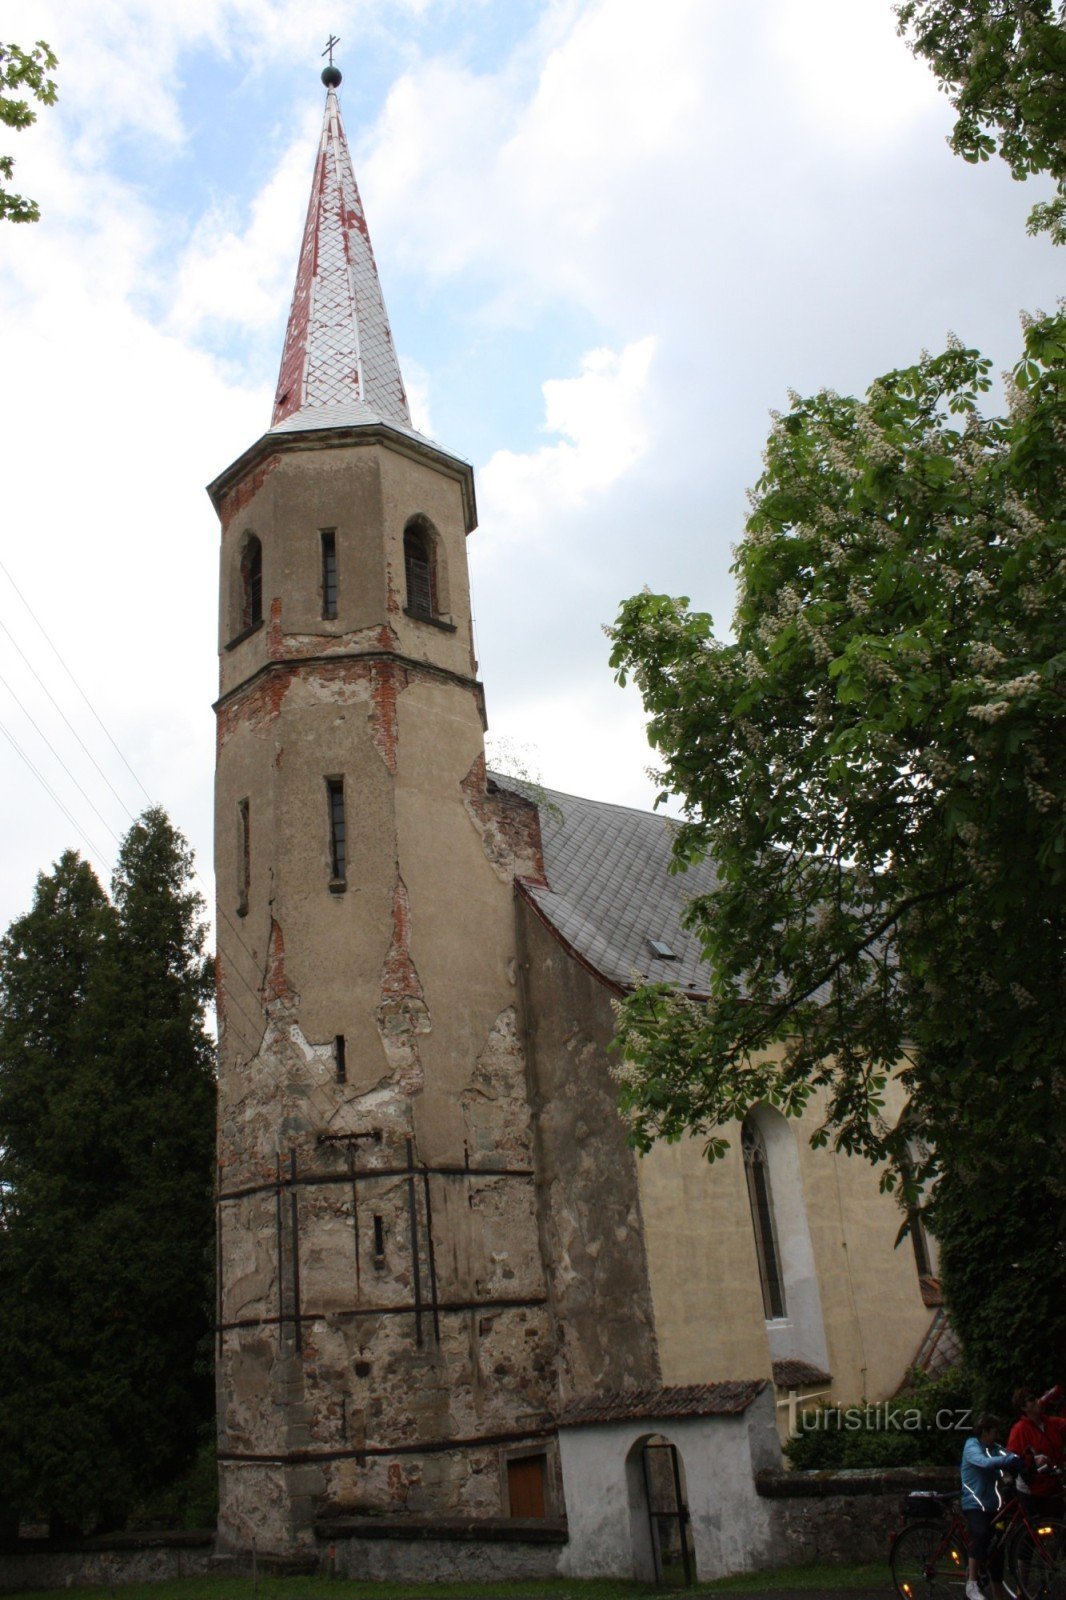 Deux monuments de la colonie de Práčov - l'église et le château d'eau